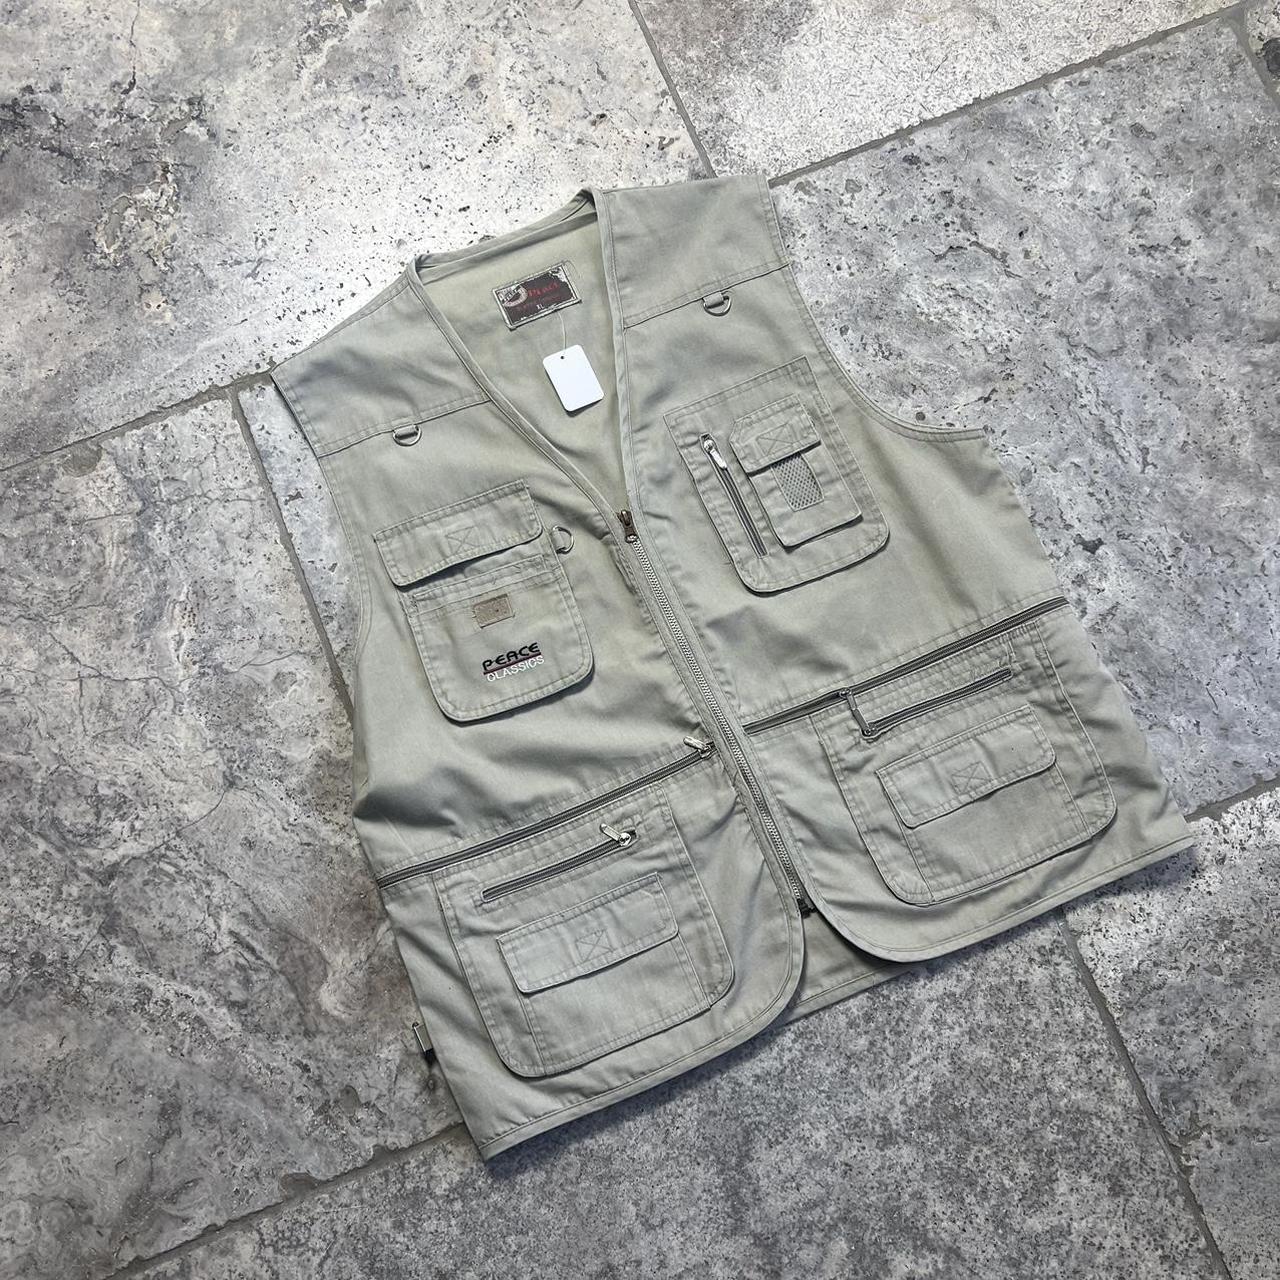 Tactical vest large / XL